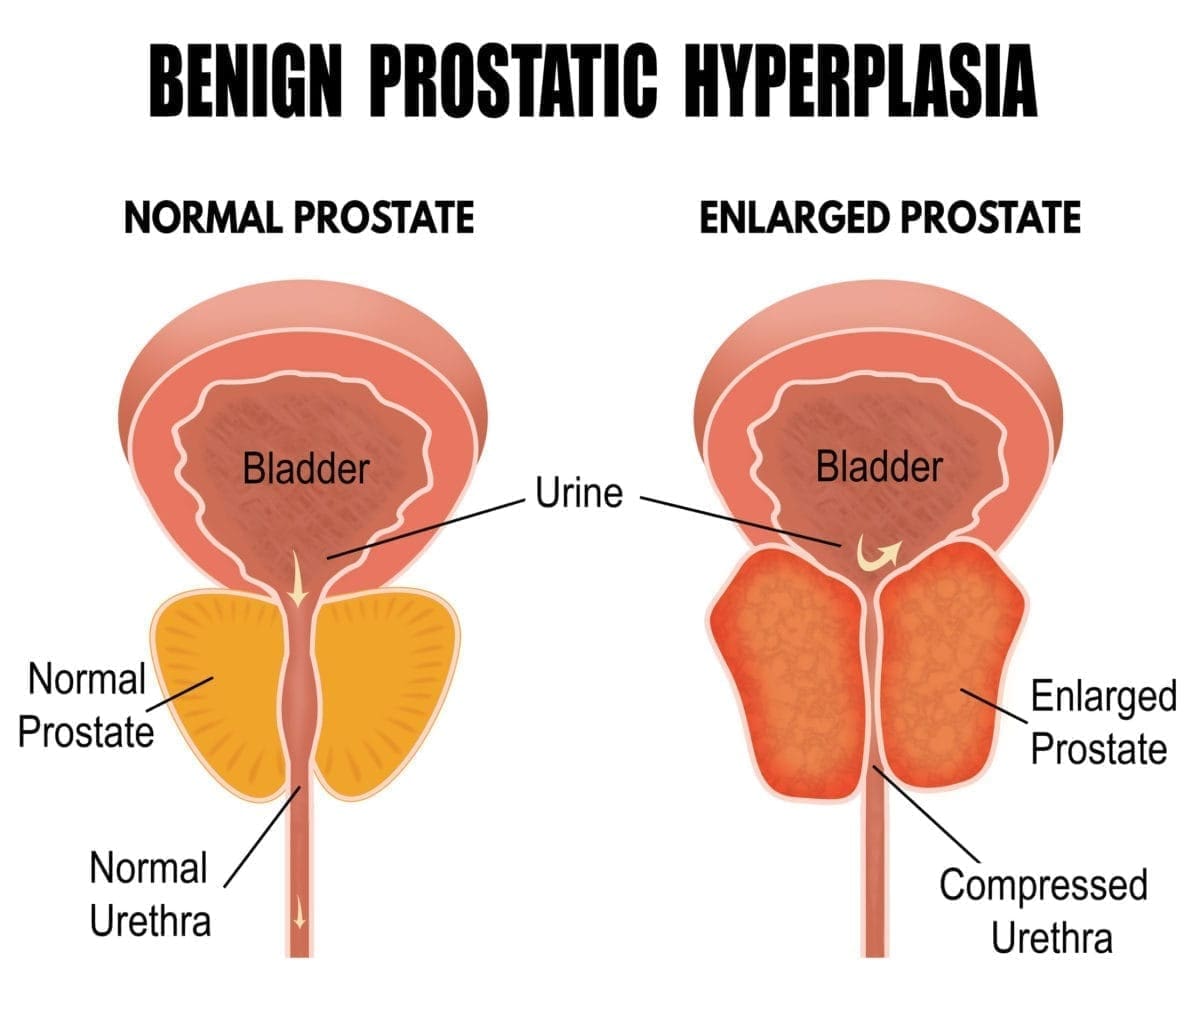 case study 70 benign prostatic hyperplasia